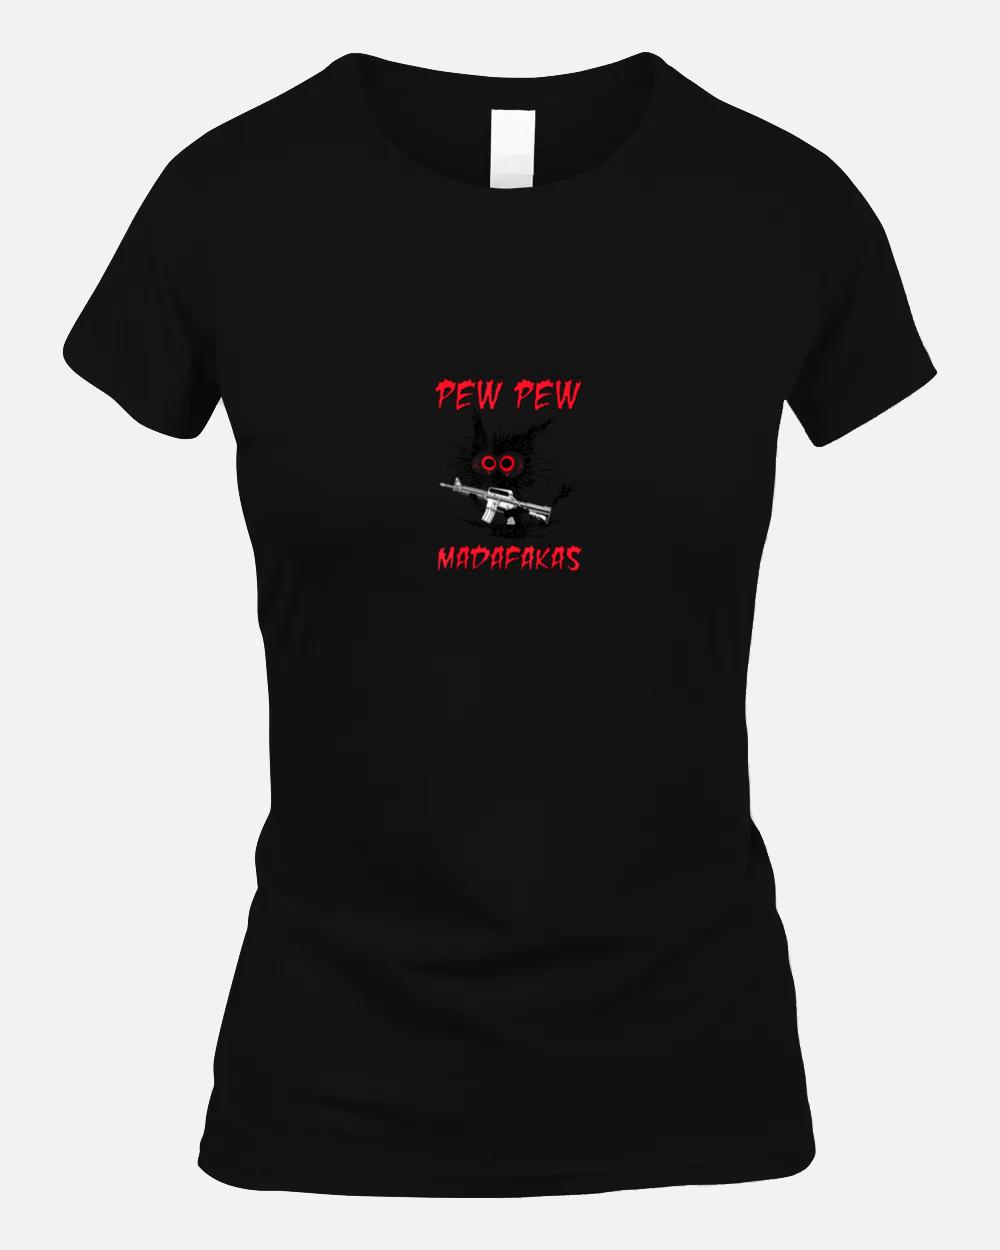 Pew pew Madafakas Black Cat Ar 15 Unisex T-Shirt